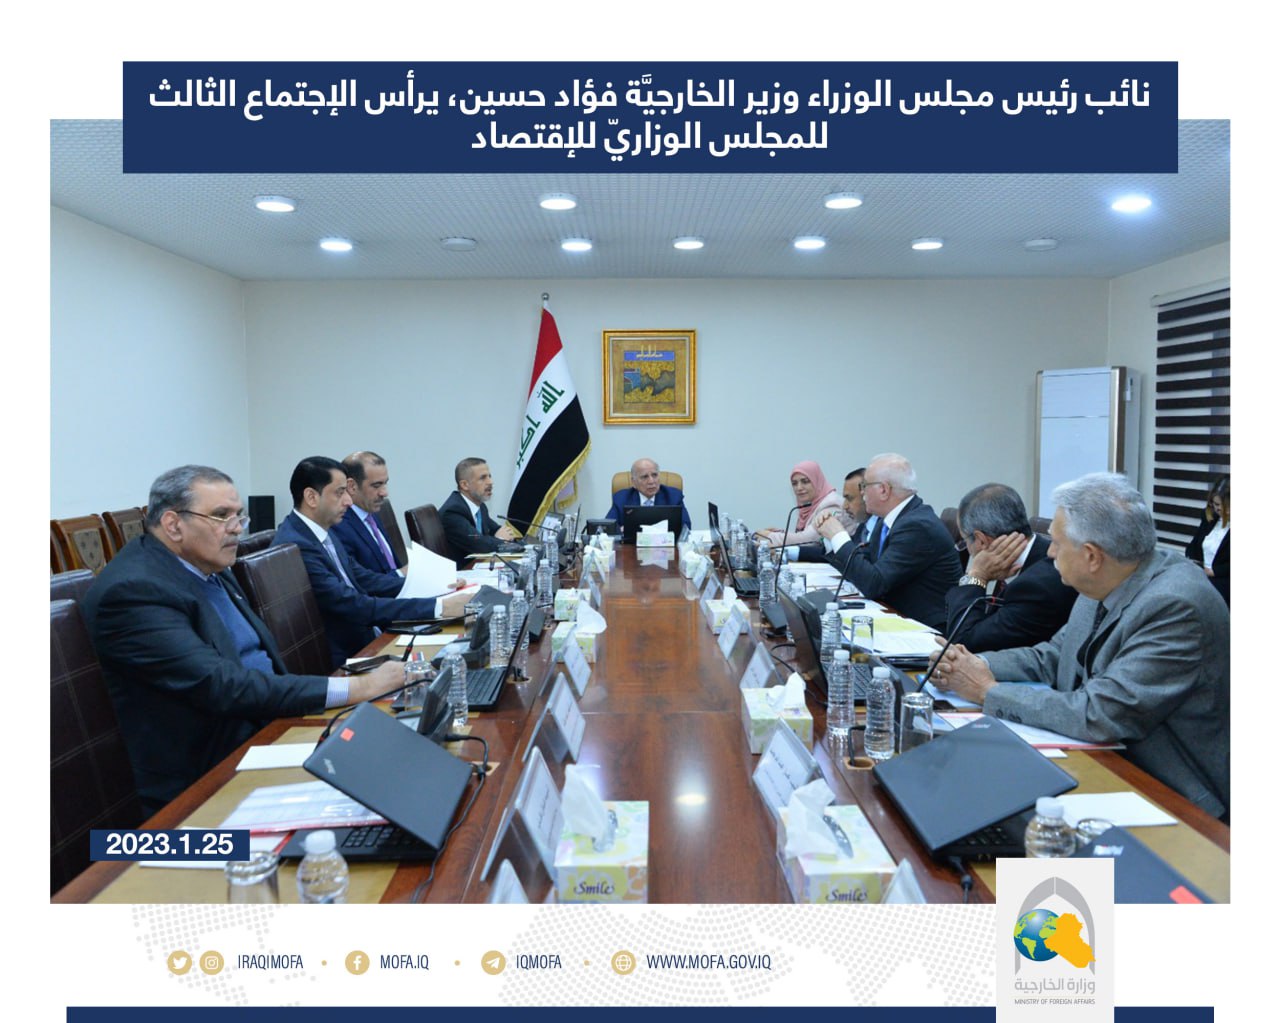 نائب رئيس مجلس الوزراء وزير الخارجيَّة فؤاد حسين، يرأس الإجتماع الثالث للمجلس الوزاريّ للإقتصاد